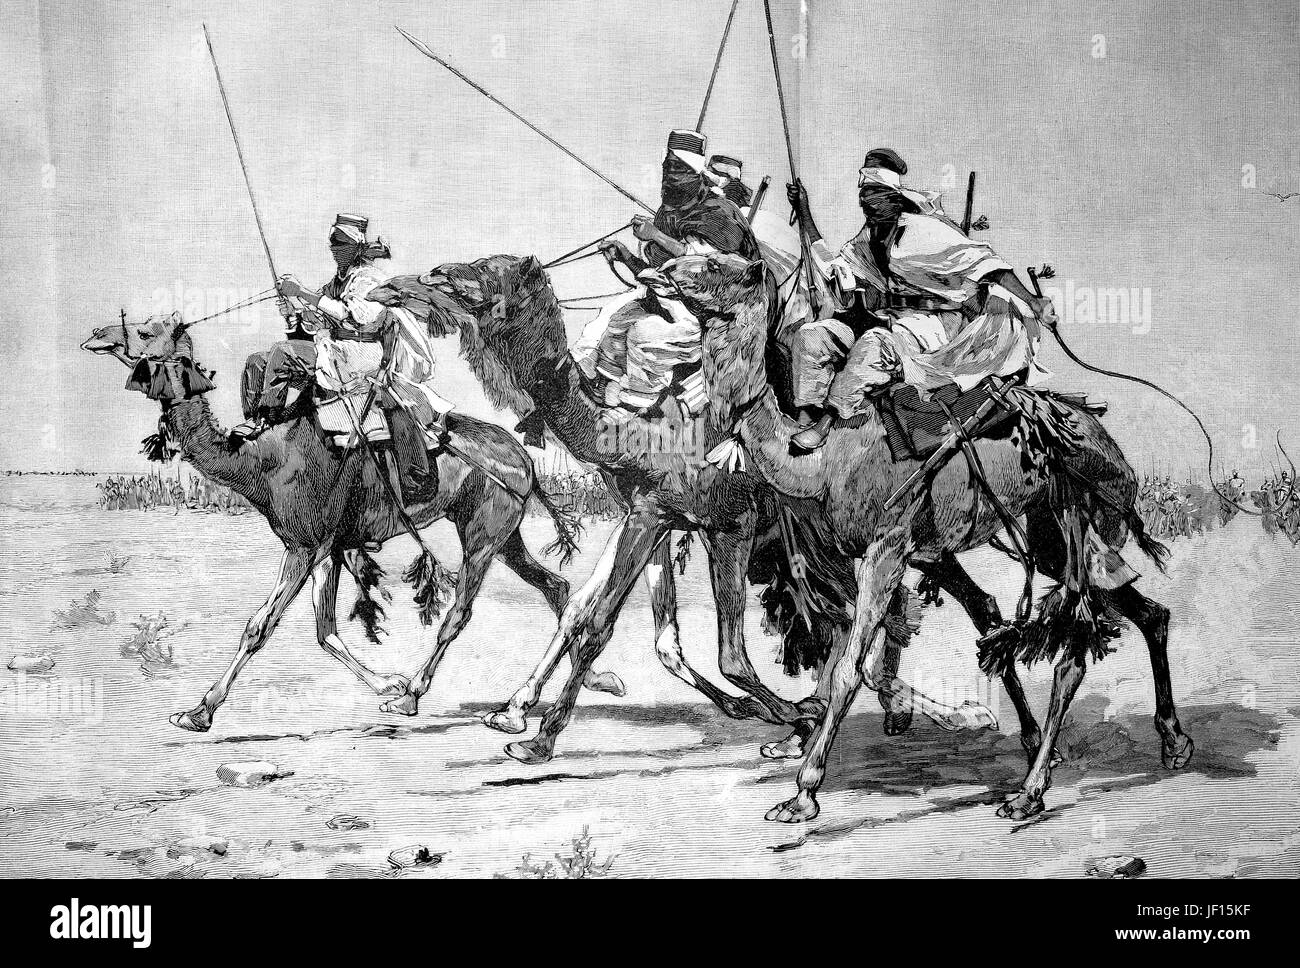 Ilustración histórica de un paseo en camello de la población tuareg de Libia, la vanguardia, la vanguardia, la parte inicial de la adelantaciгіn formación militar, mejor reproducción digital de una impresión original de 1888 Foto de stock